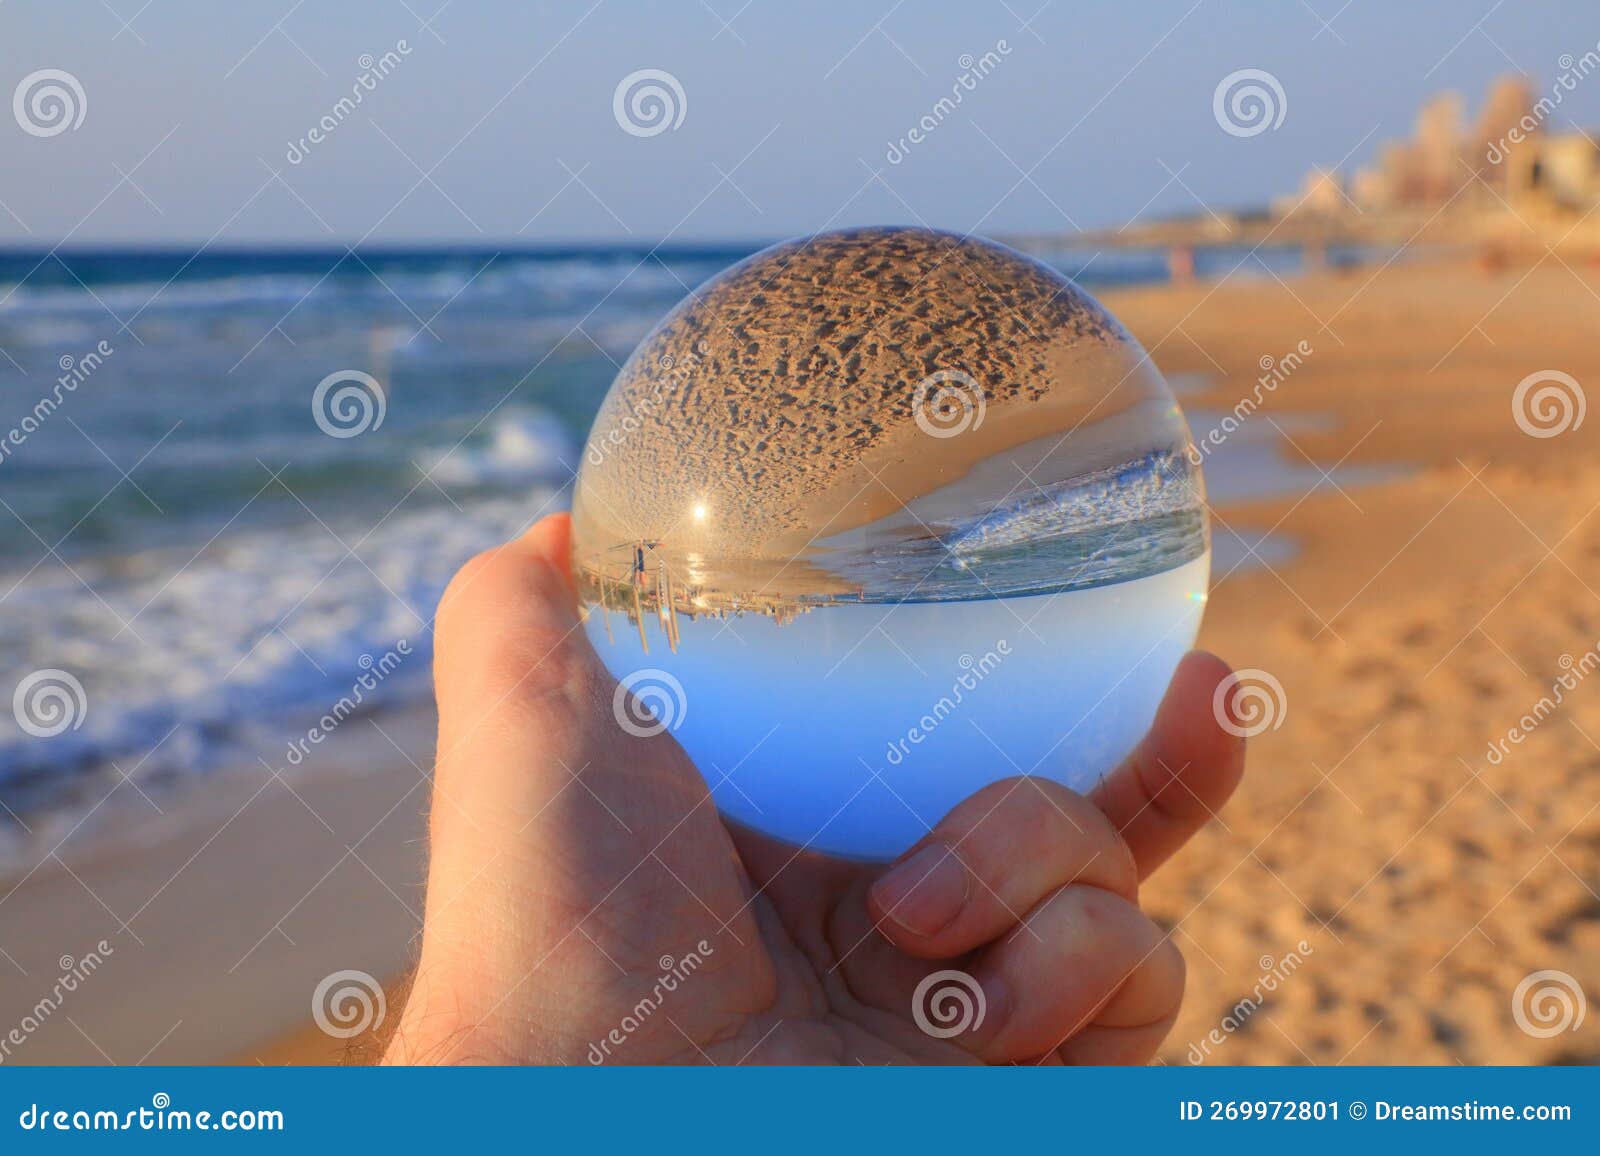 haifa israel in magic glass sphere